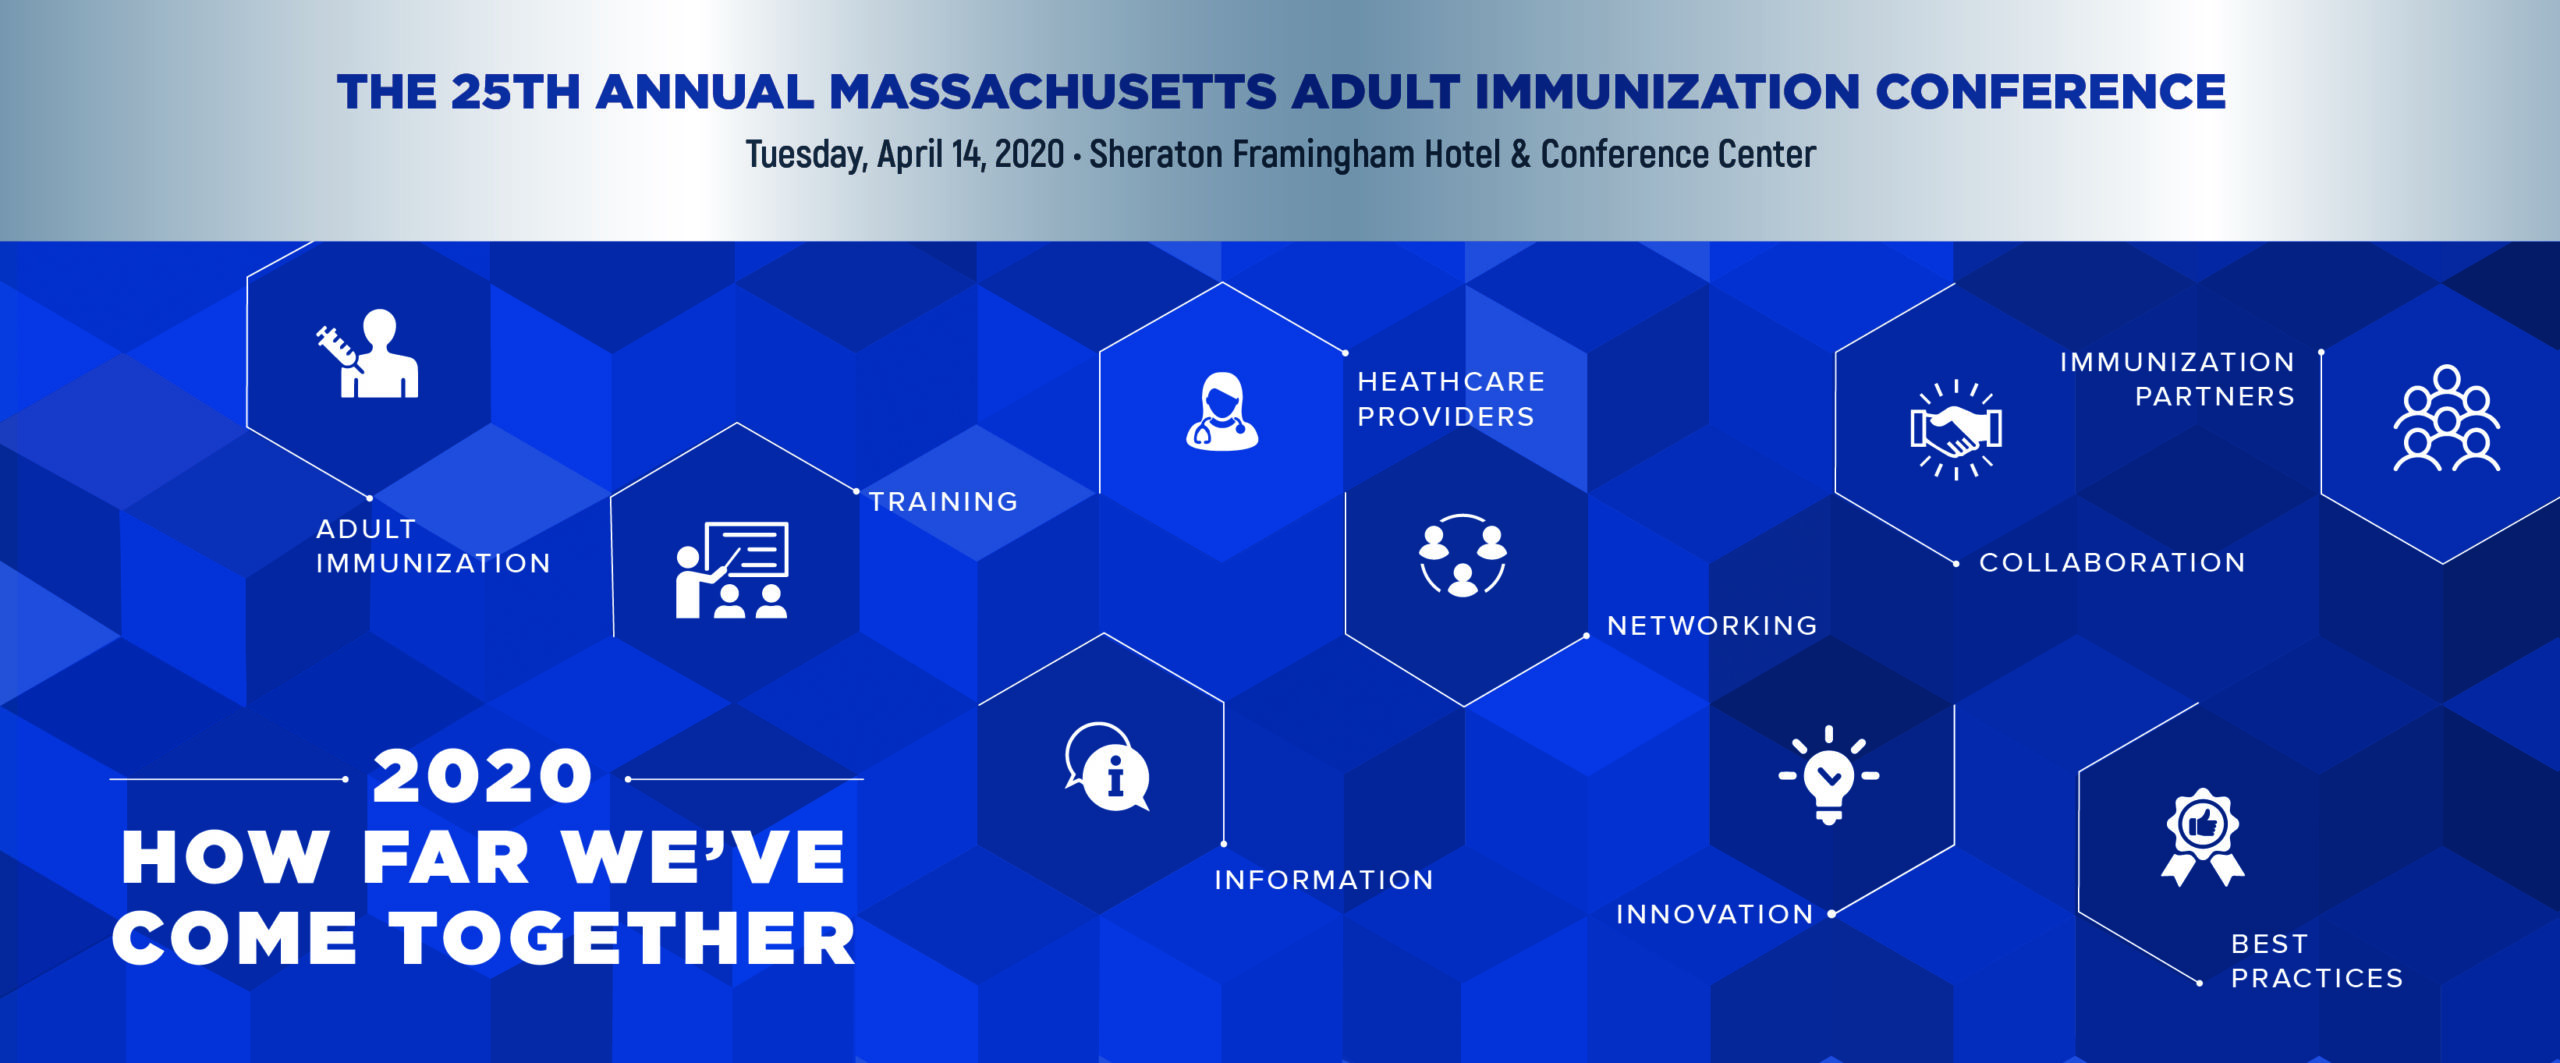 MA Adult Immunization Conference 2020